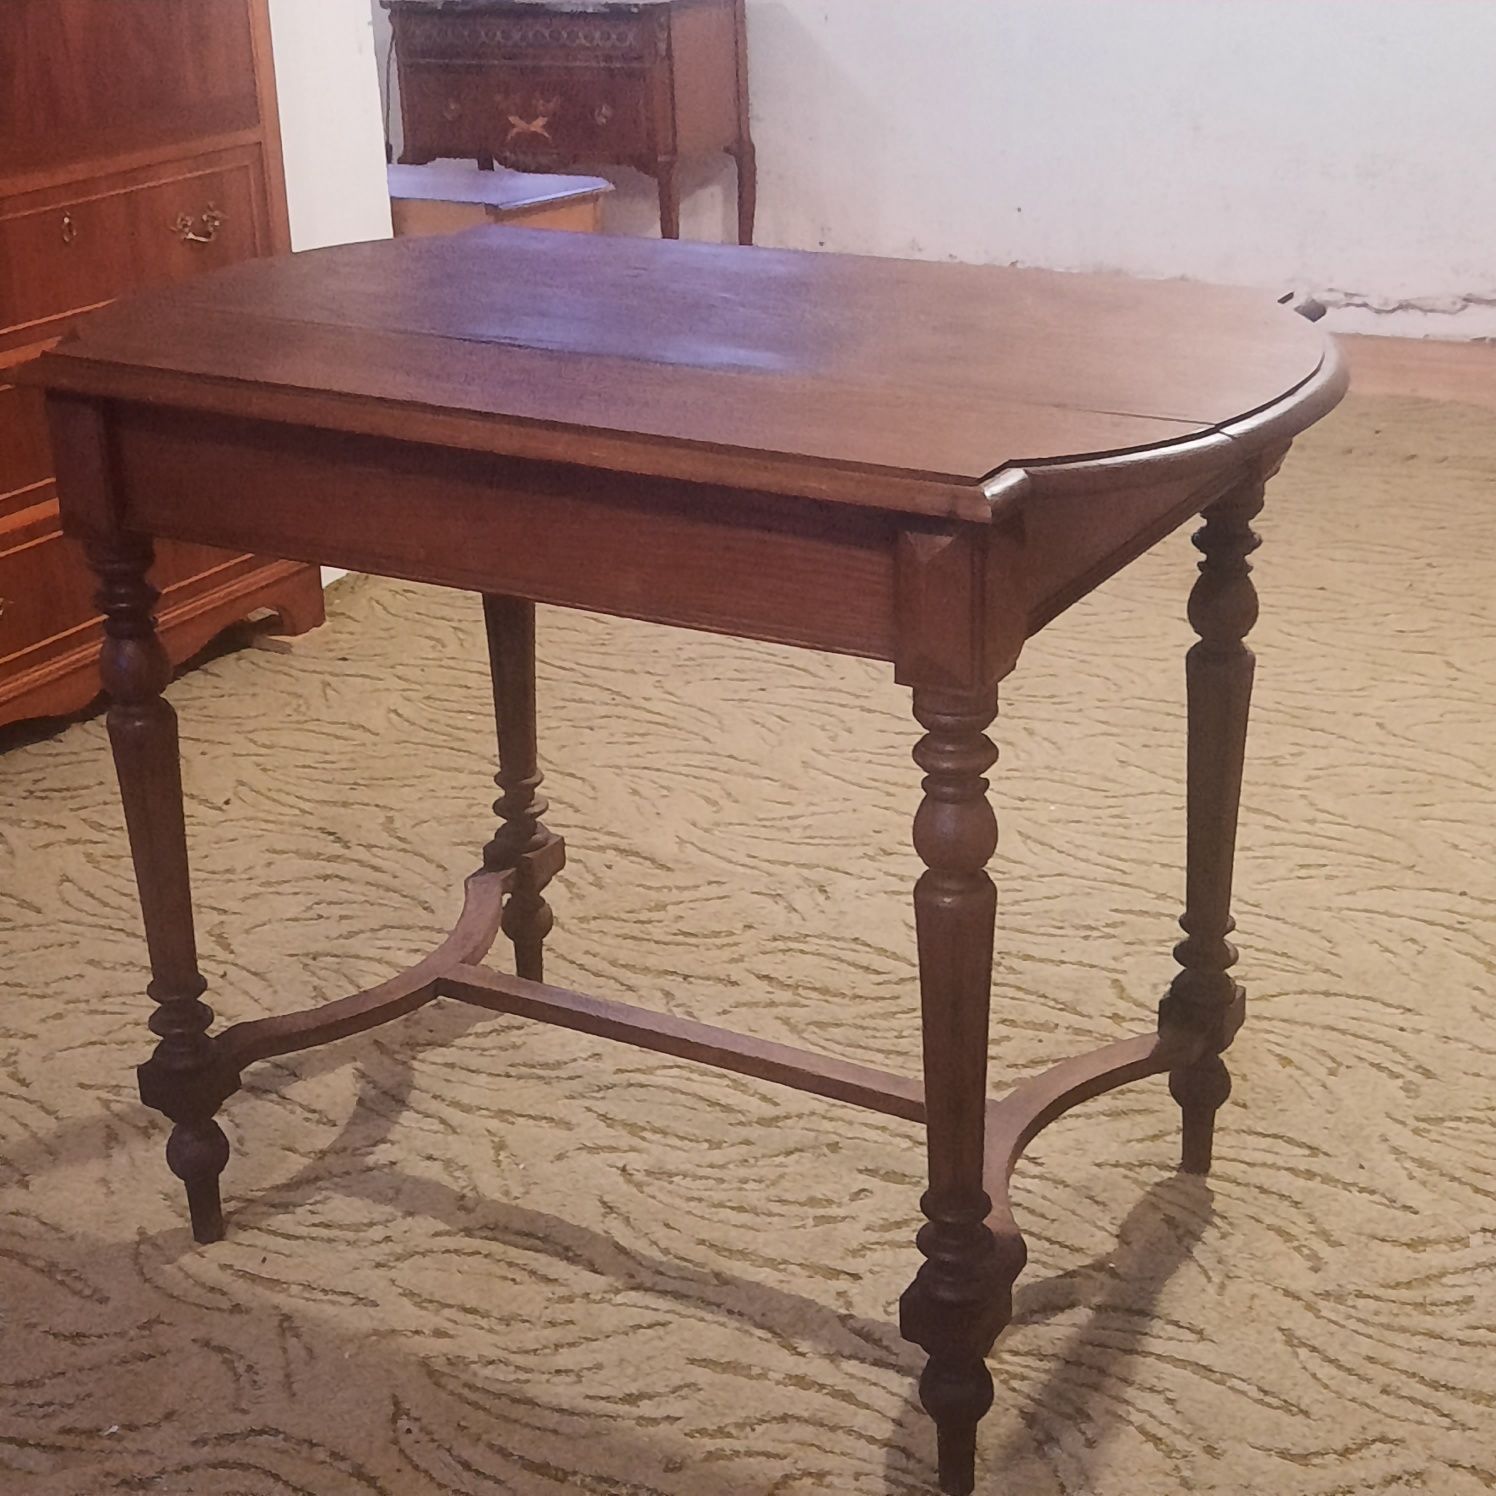 Stary ładny stół dębowy ciekawa forma mebla